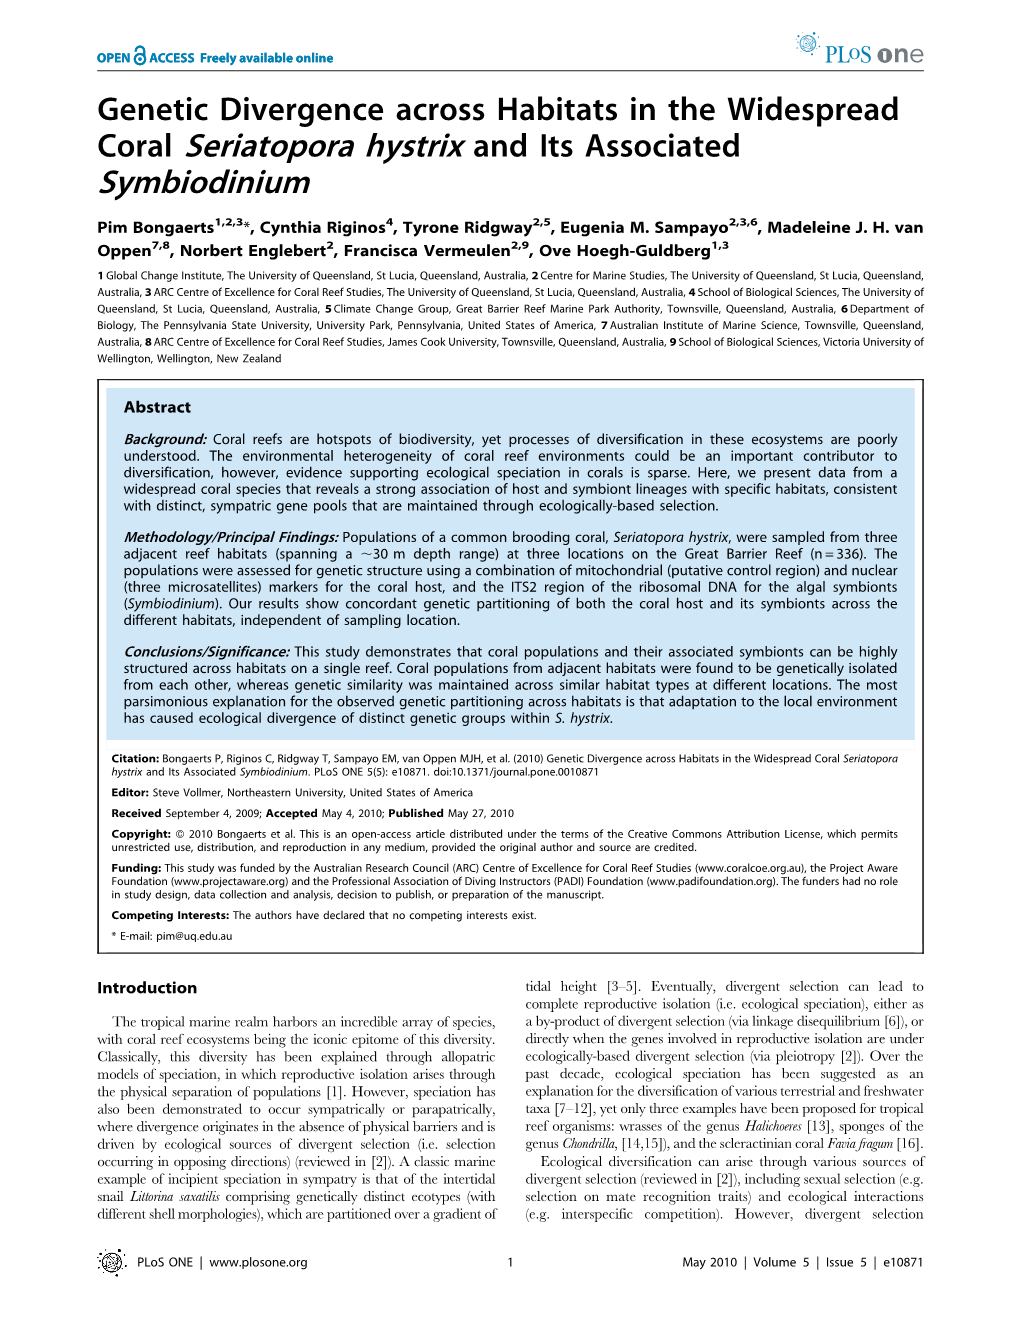 Coral Seriatopora Hystrix and Its Associated Symbiodinium